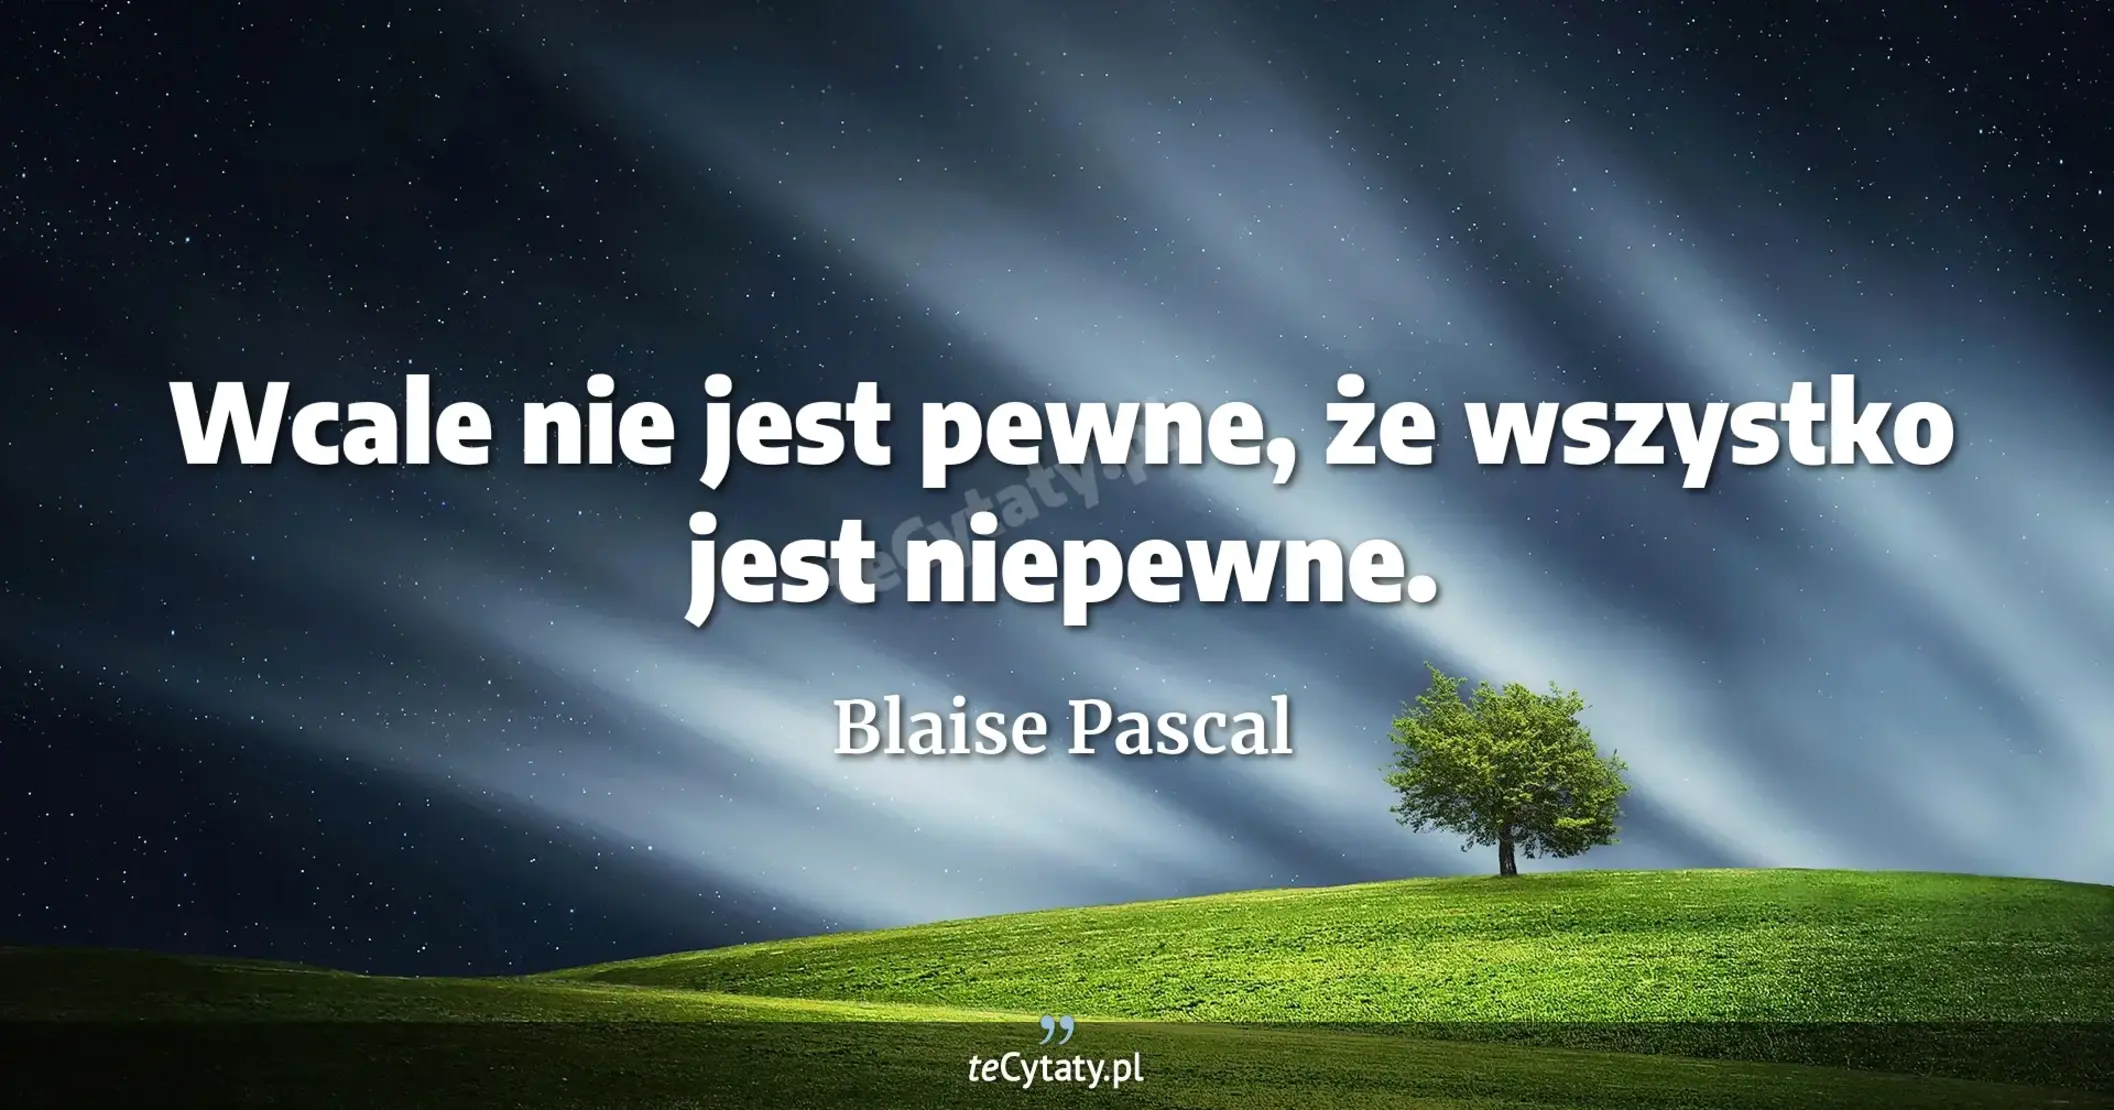 Wcale nie jest pewne, że wszystko jest niepewne. - Blaise Pascal